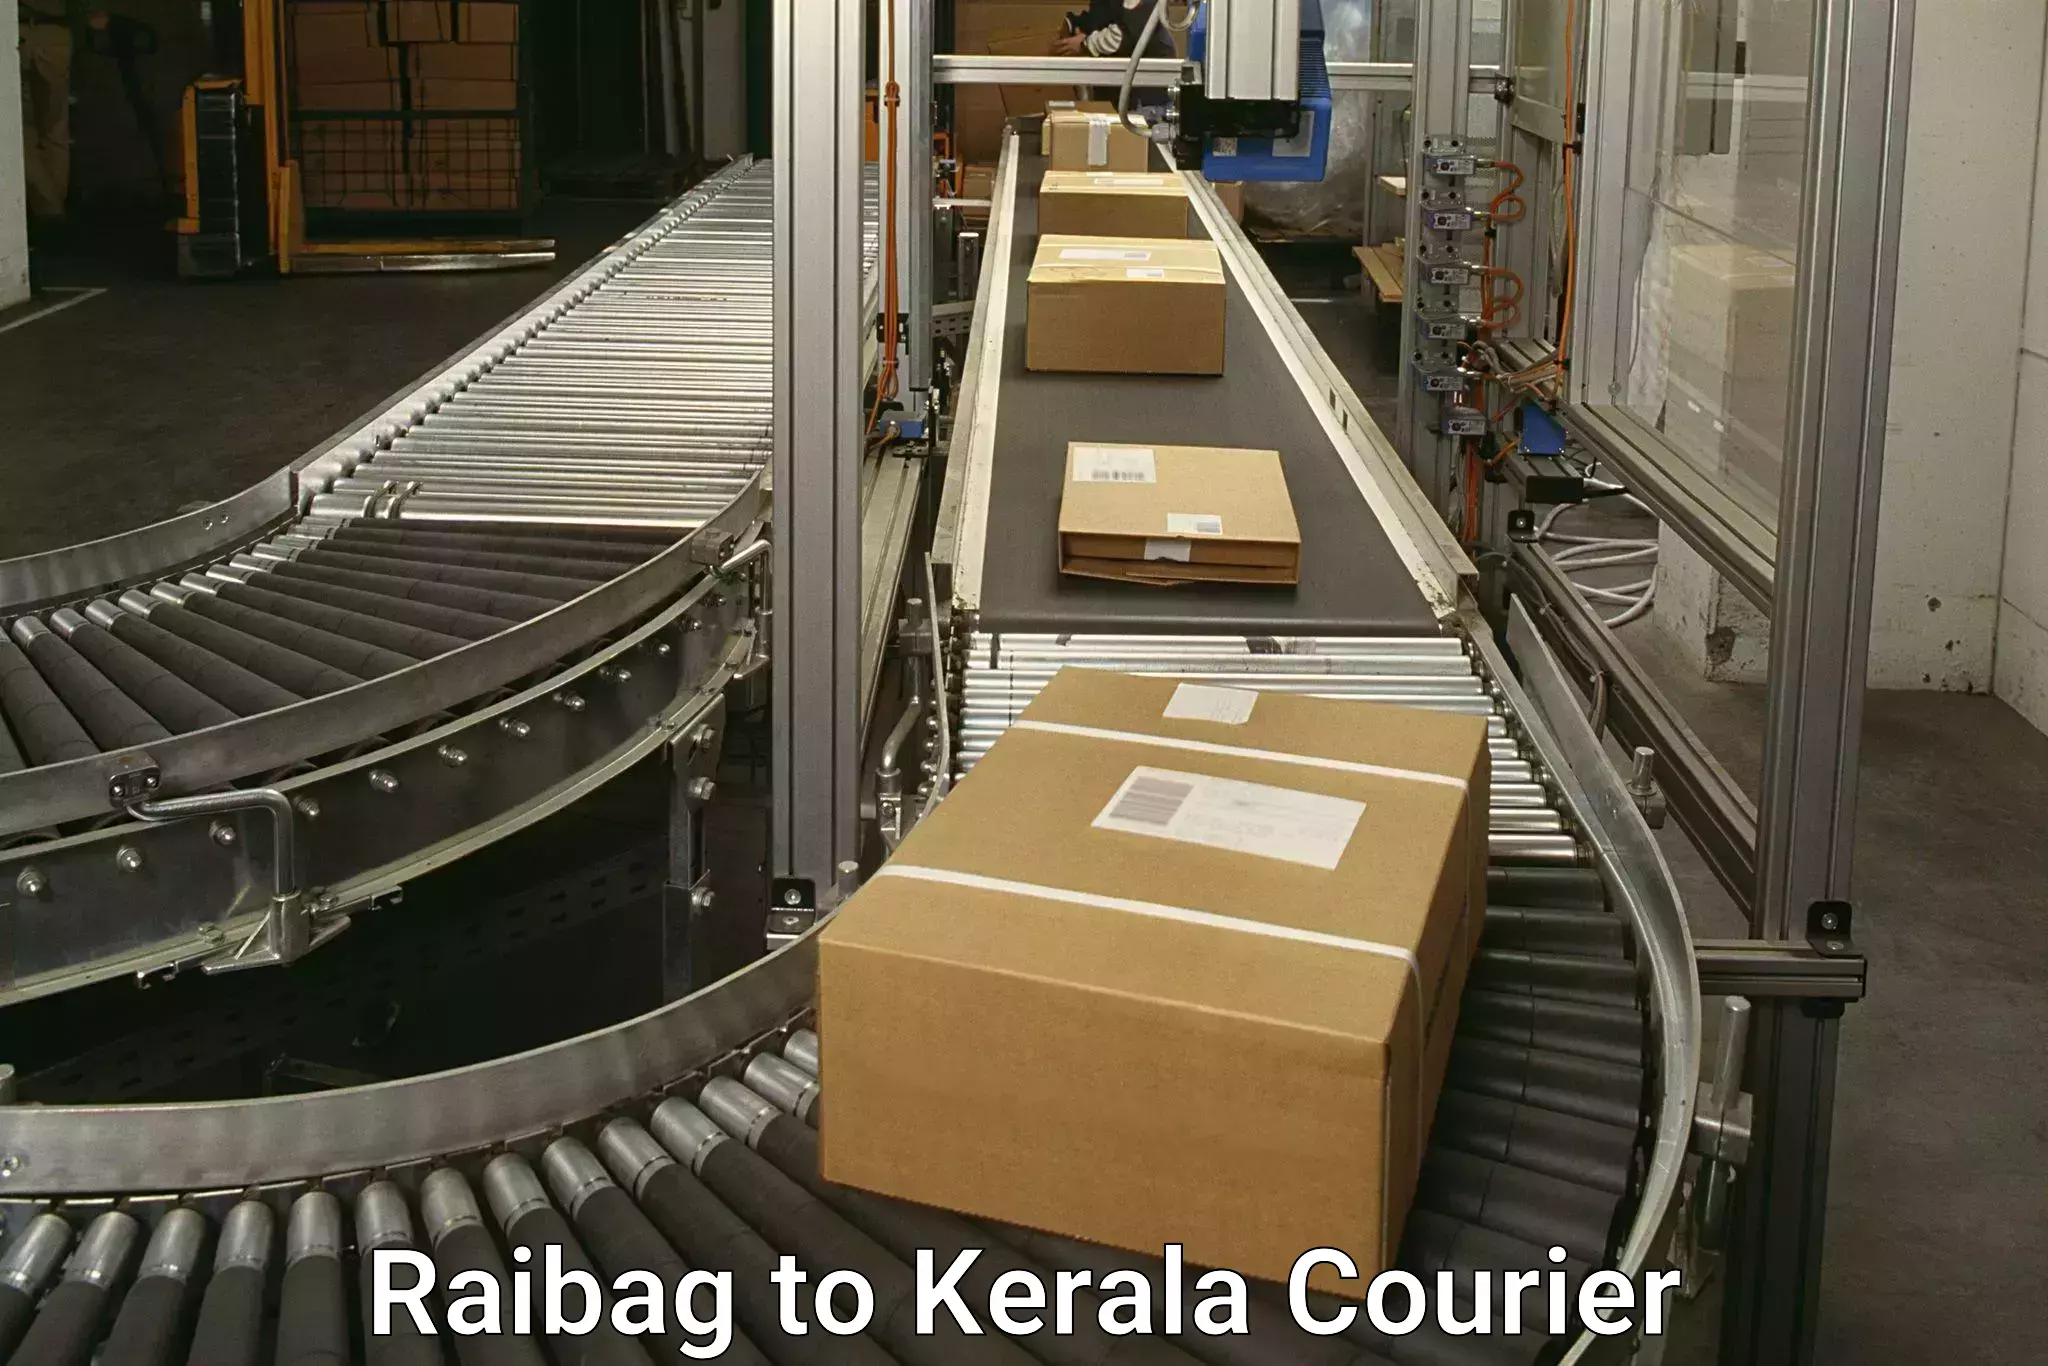 Courier service comparison Raibag to Punalur